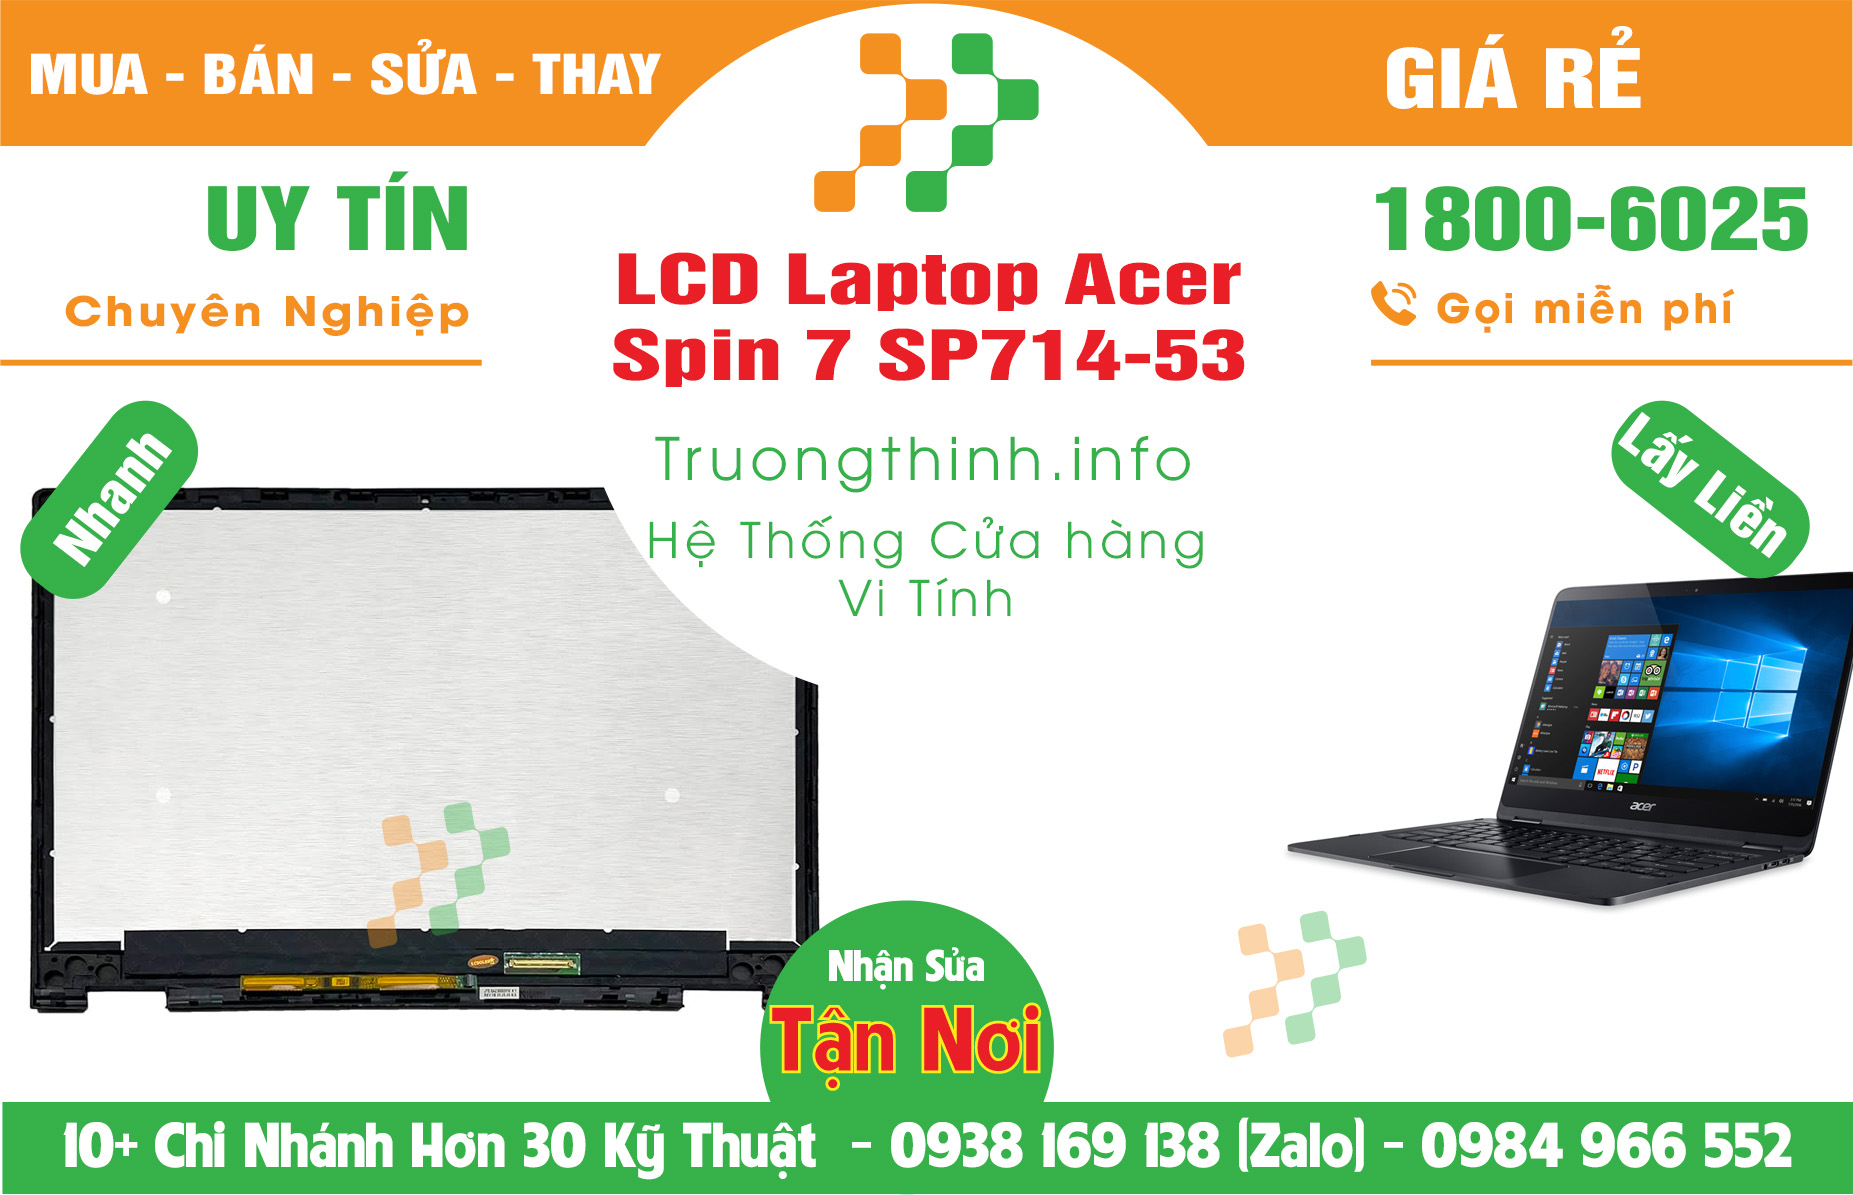 Mua Bán Màn Hình Laptop Acer Spin 7 SP714-53 Giá Rẻ | Máy Tính Trường Thịnh Giá Rẻ